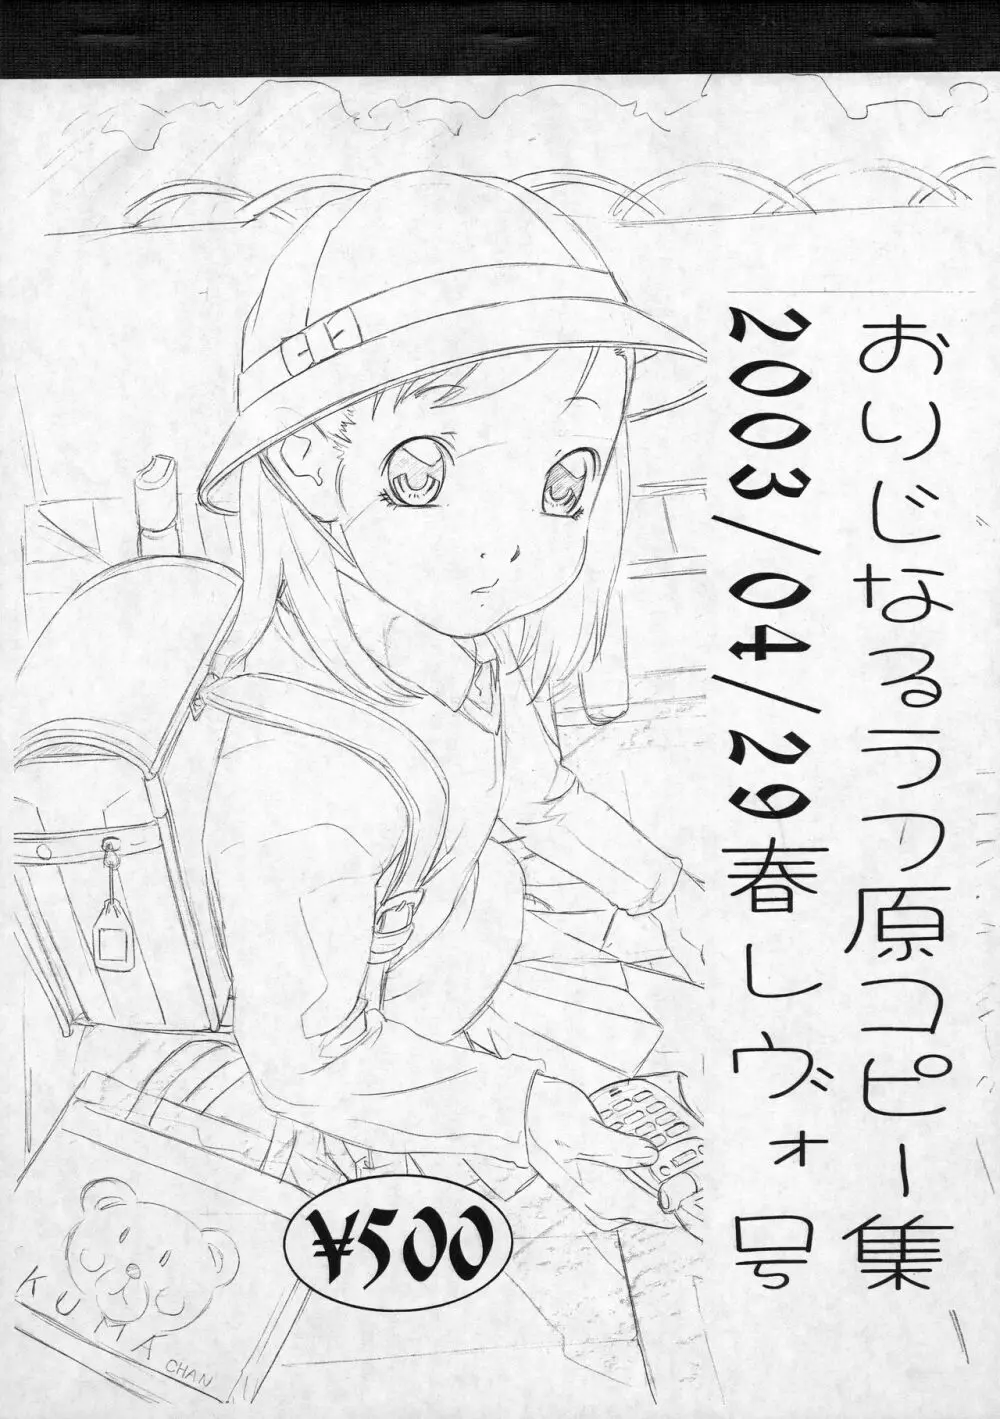 おりじなるらふ原コピー集 2003/04/29 春レヴォ号